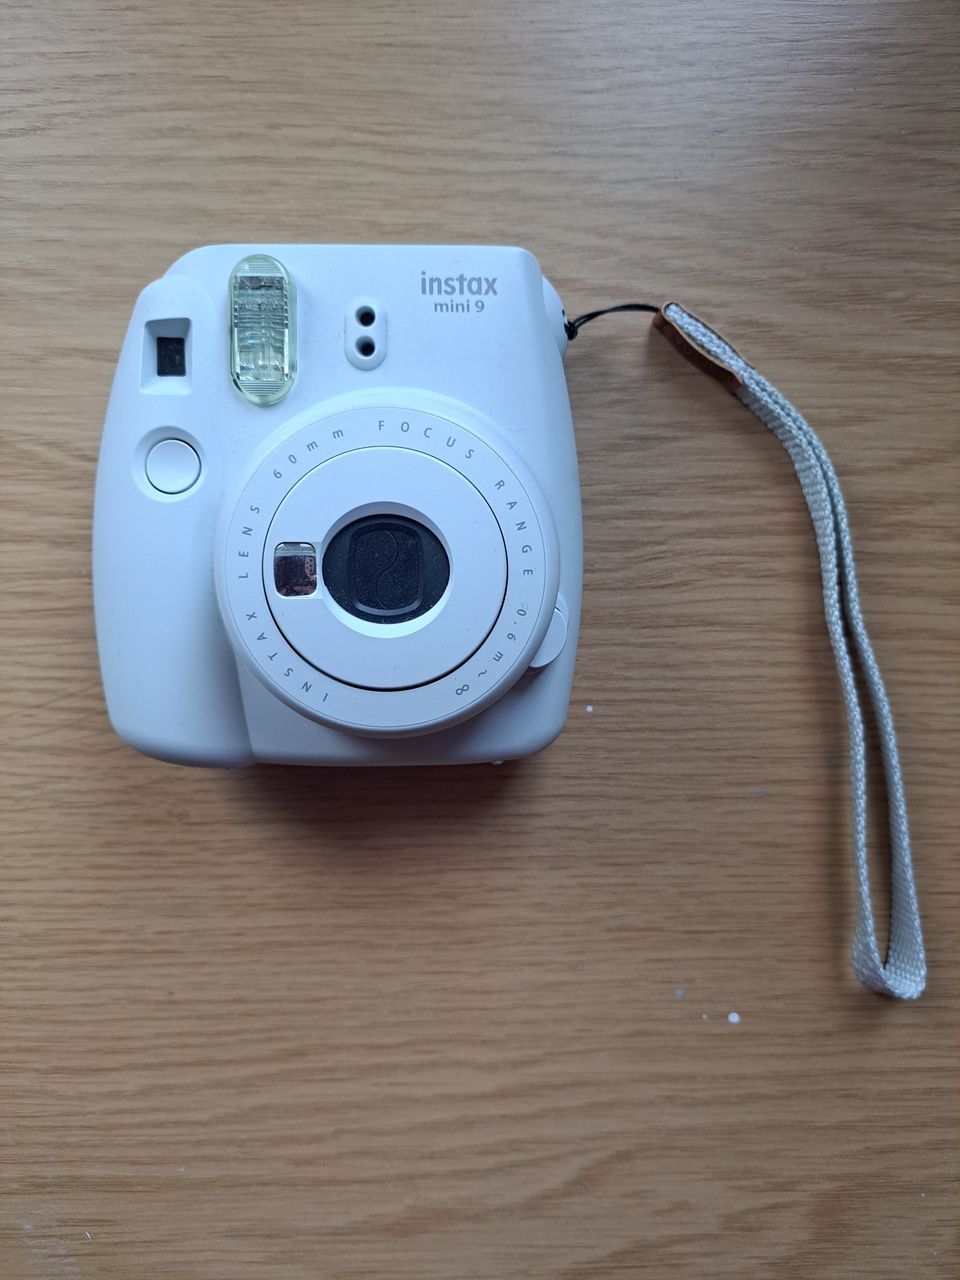 Vuokrataan polaroidkamera Instax mini 9